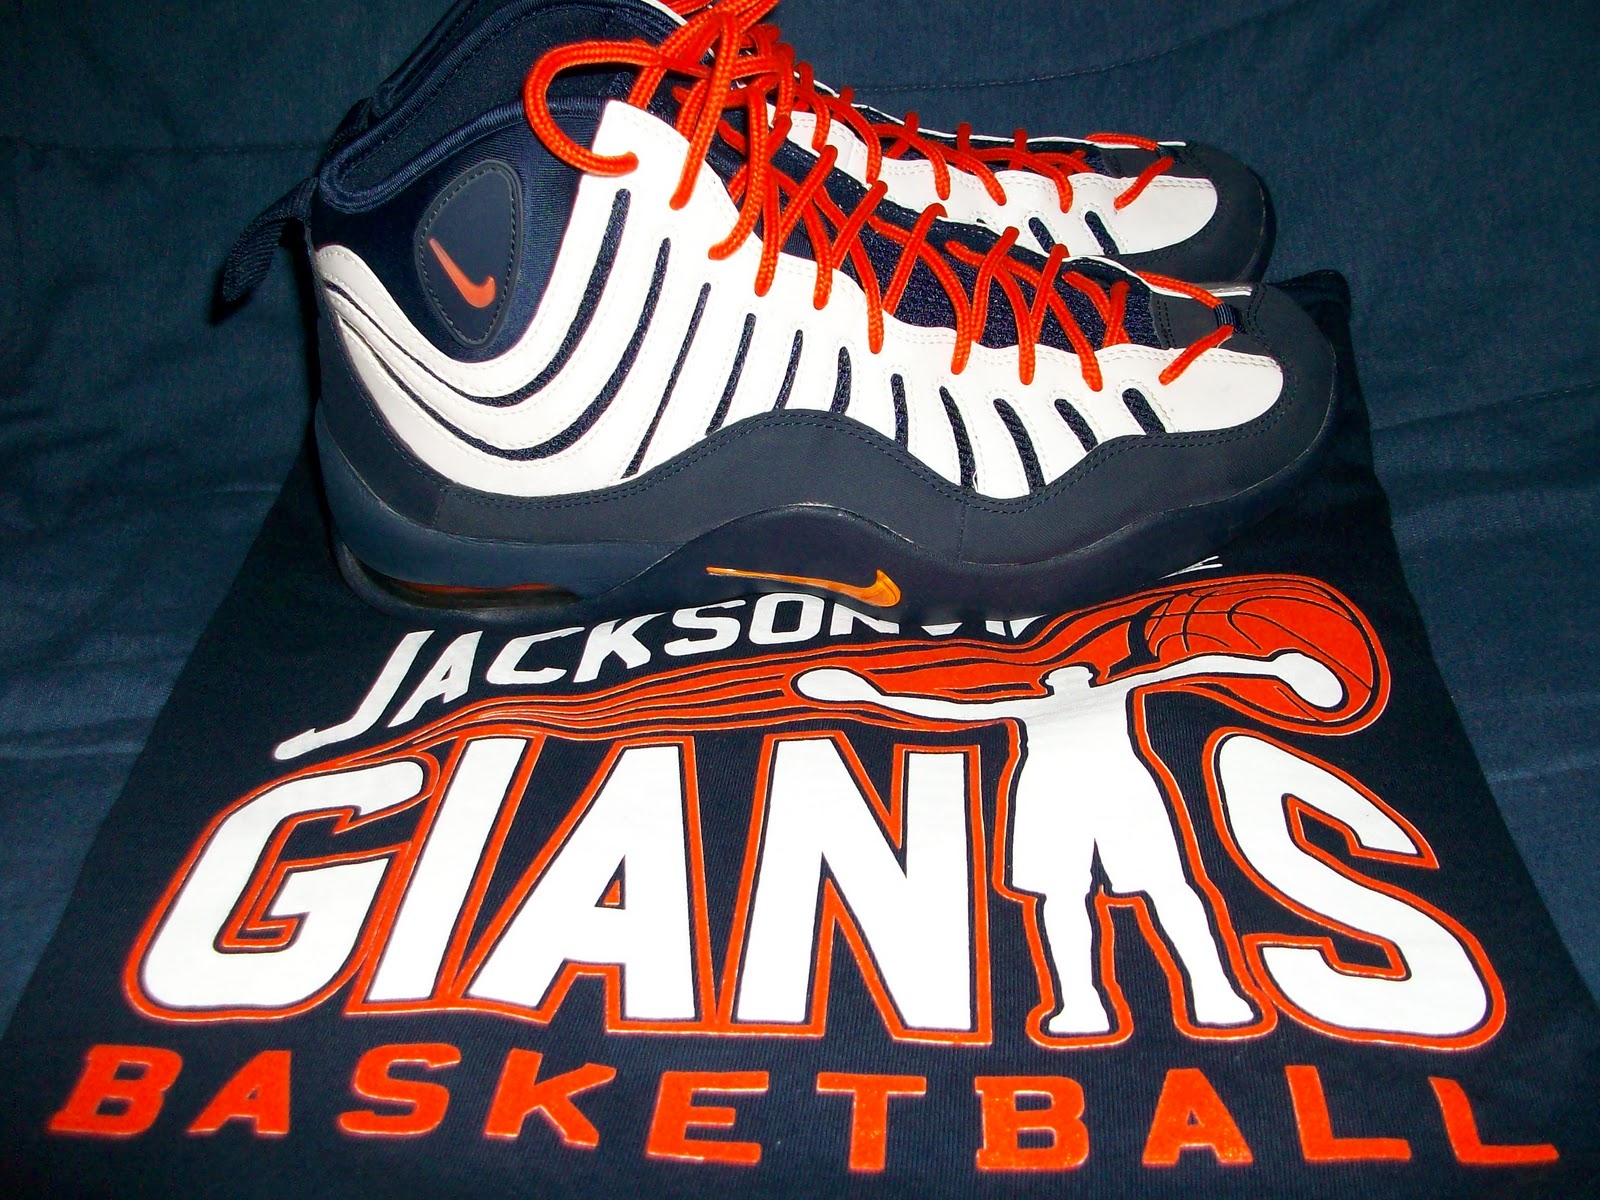 Jacksonville Giants Basketball Team1600 x 1200